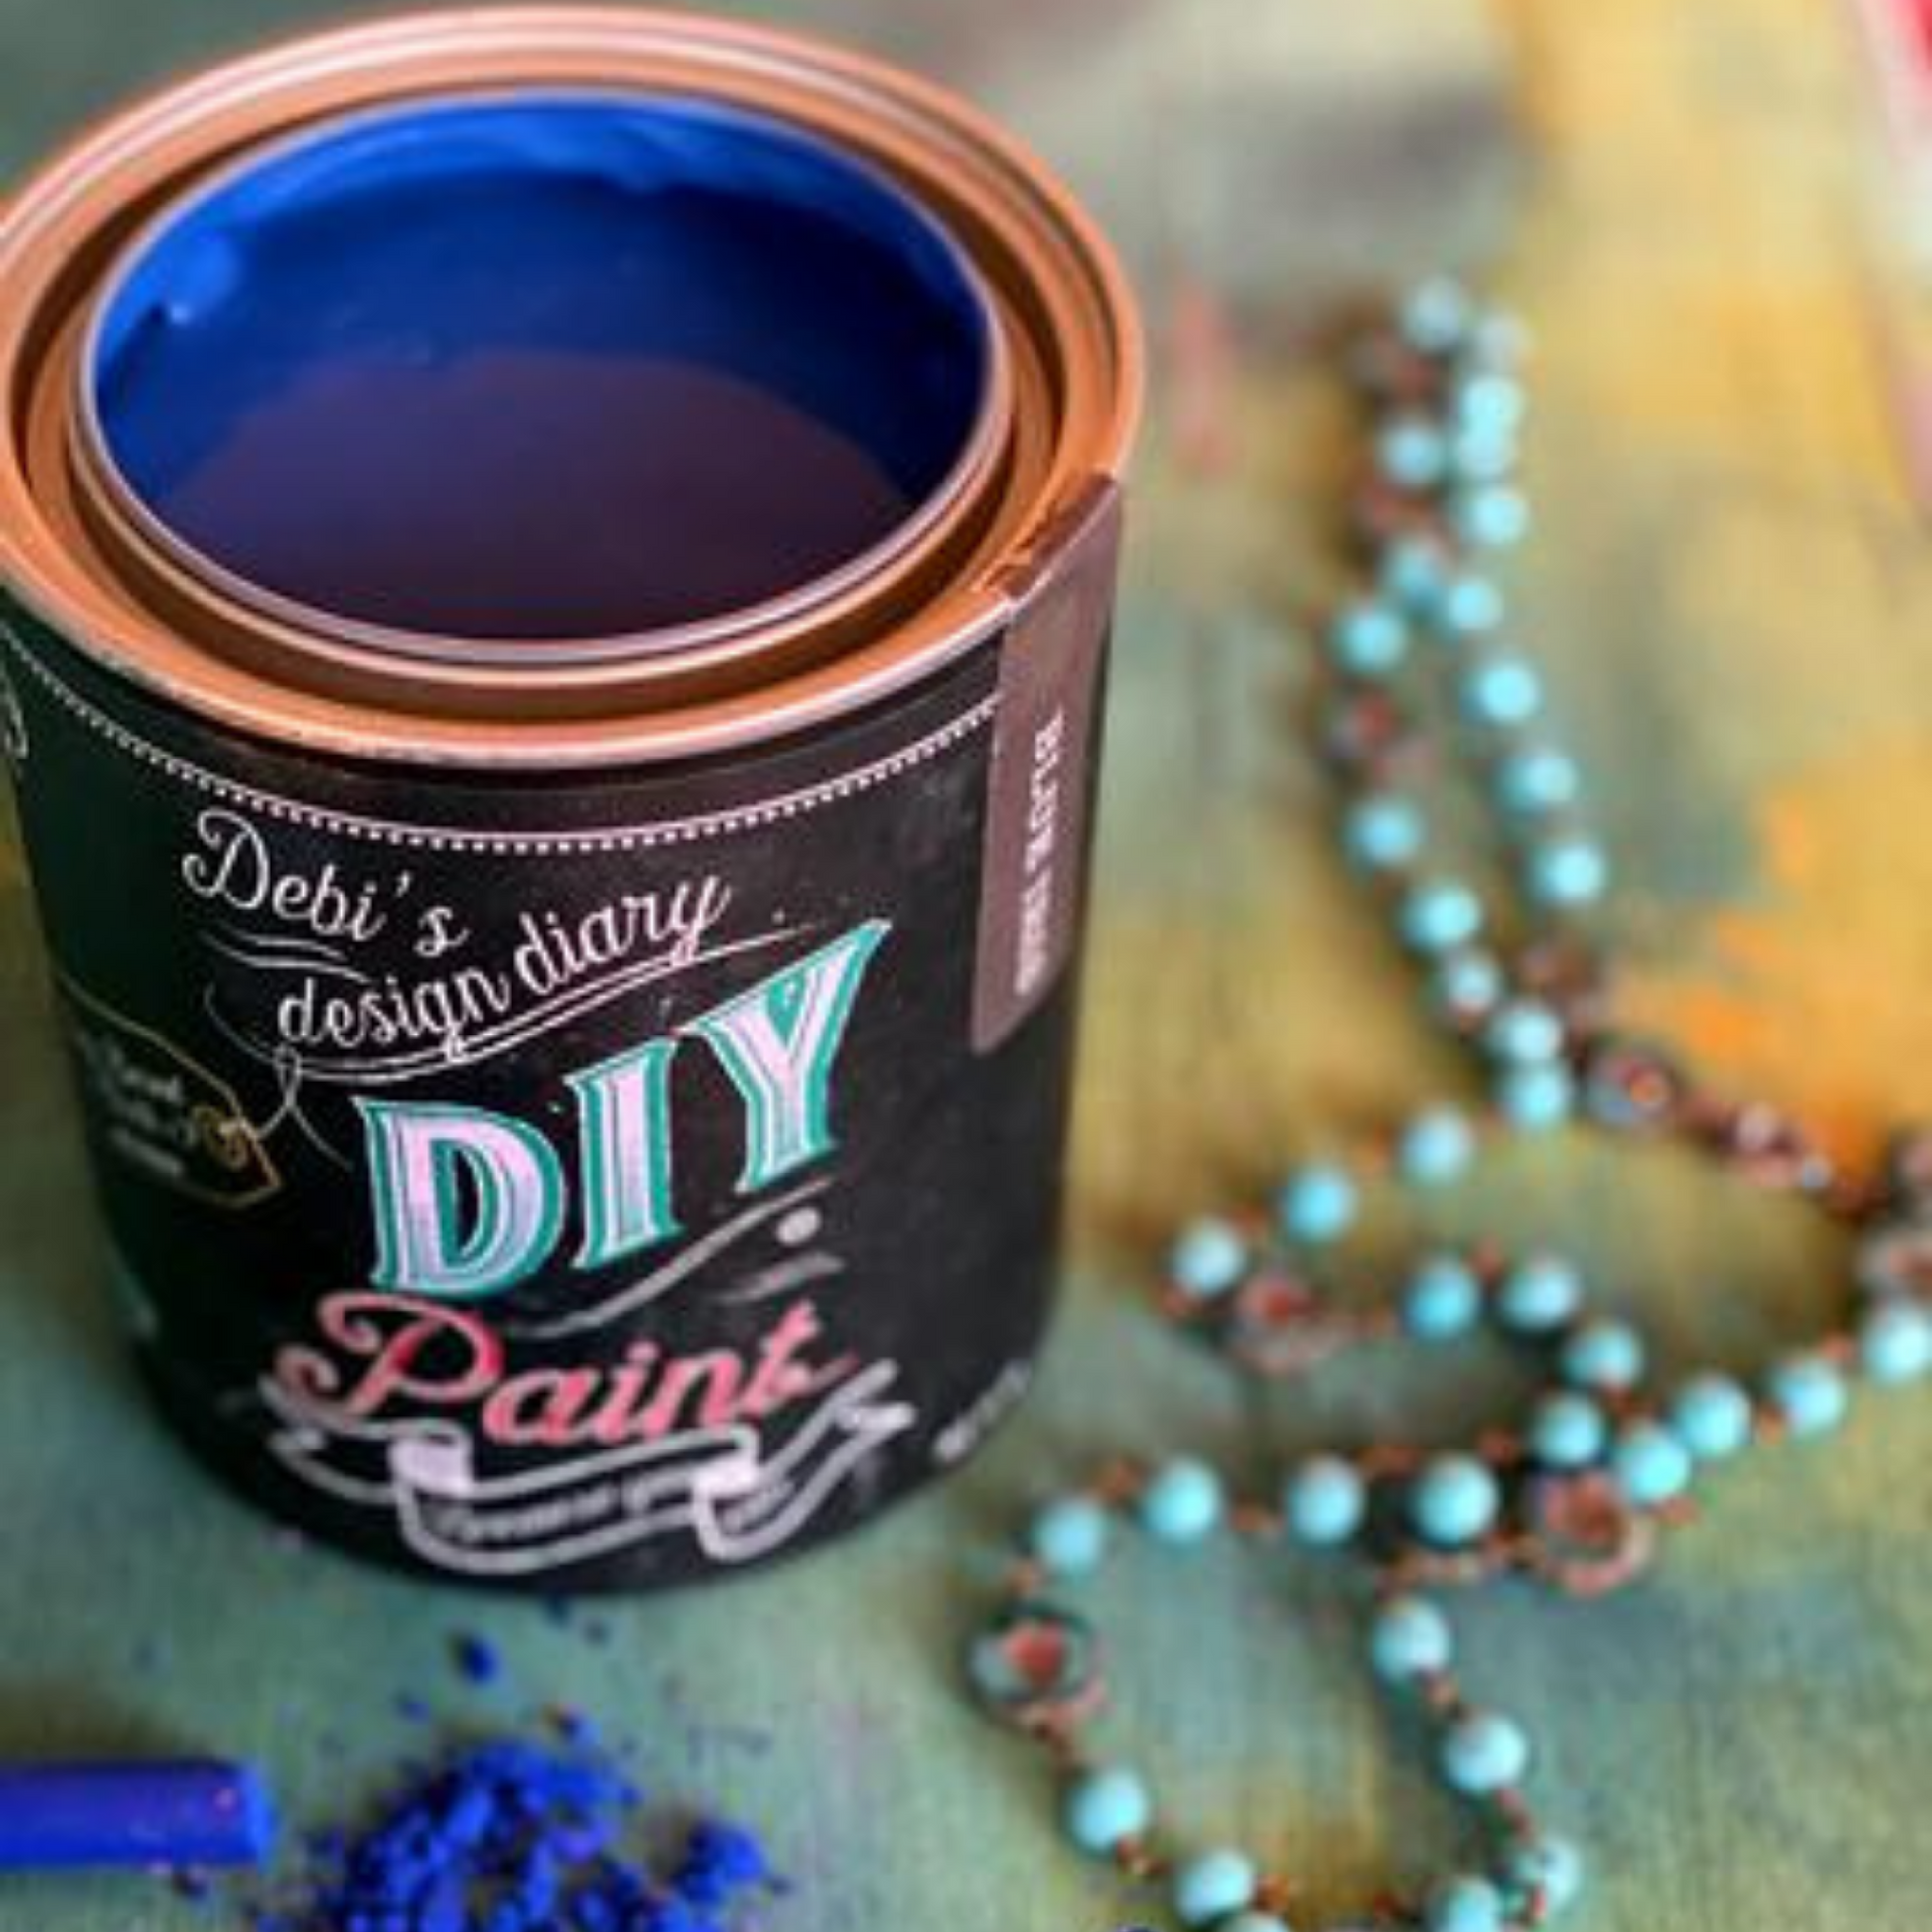 Debi's Design Diary DIY Paint in Blue Iris at Milton's Daughter